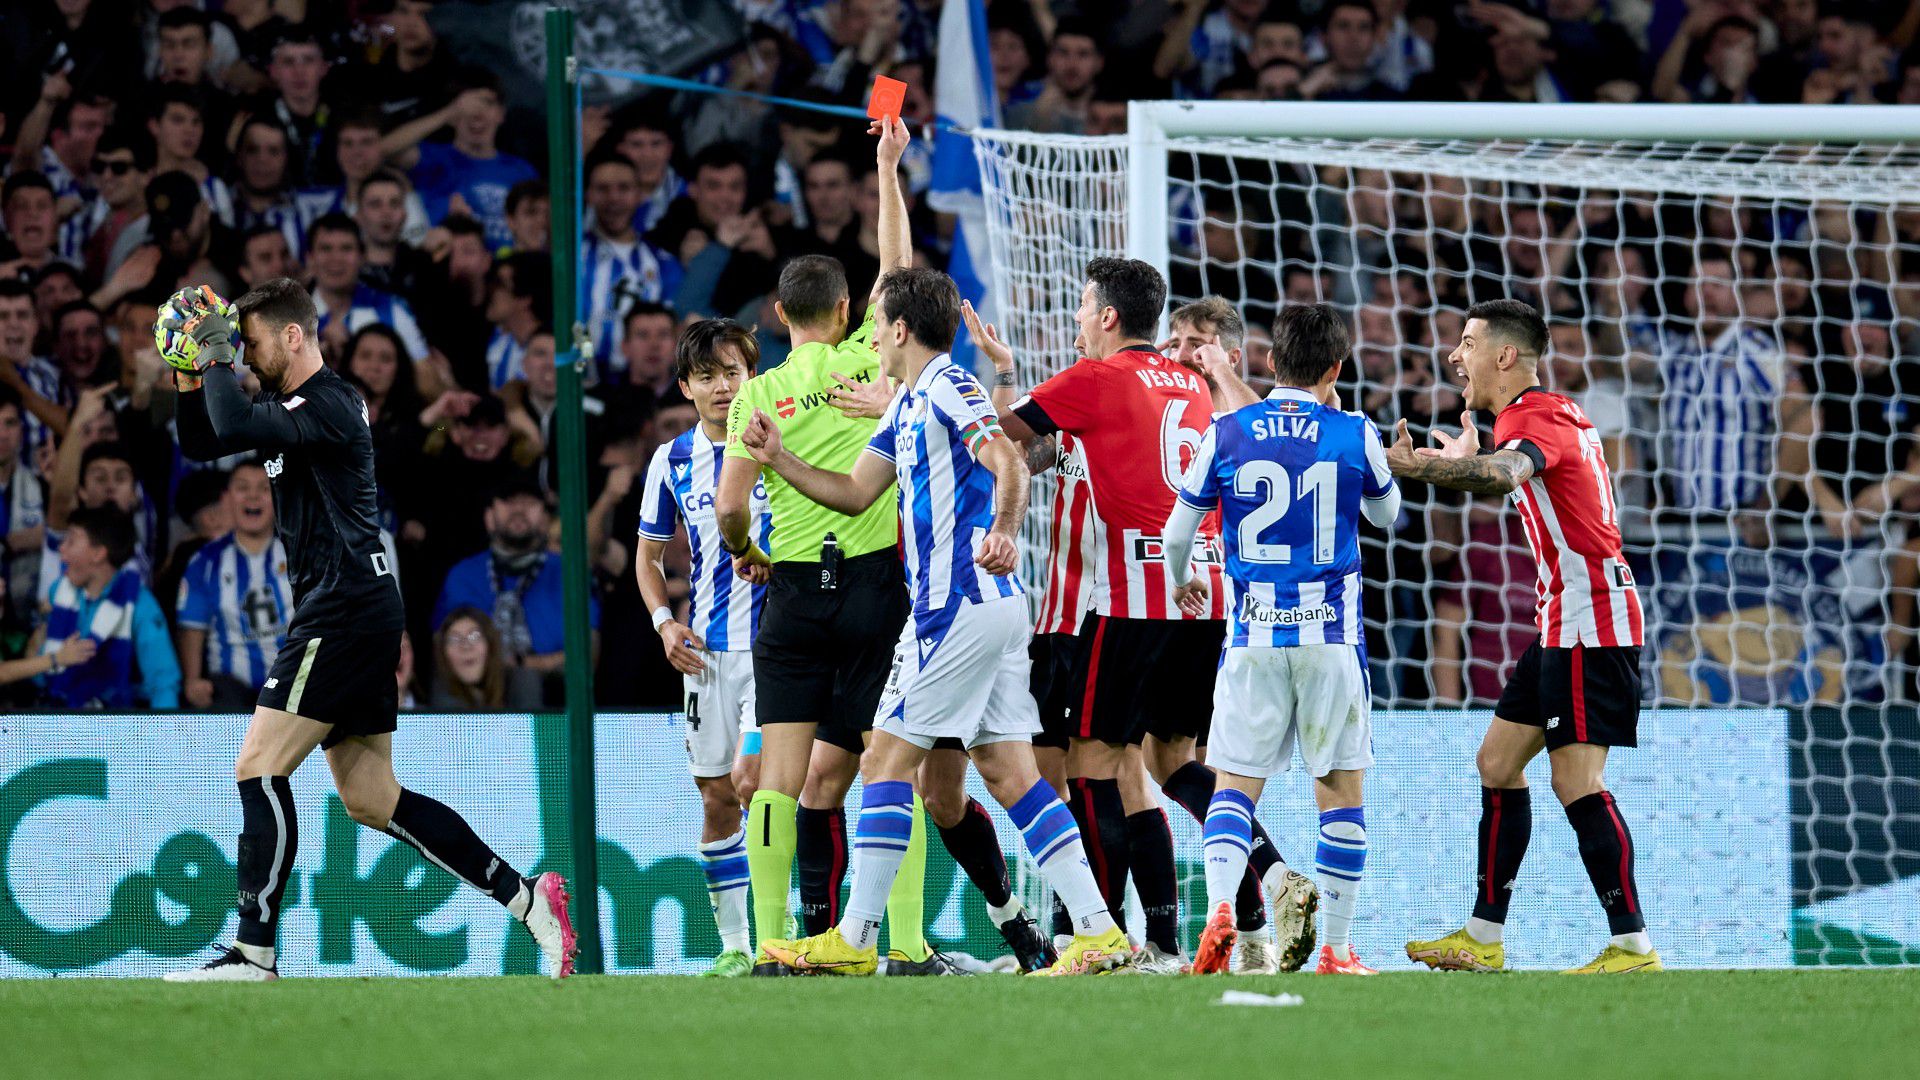 Négy gólt és egy piros lapot hozott a baszk rangadó, amelyen a Real Sociedad esélyt sem adott a Bilbaónak.